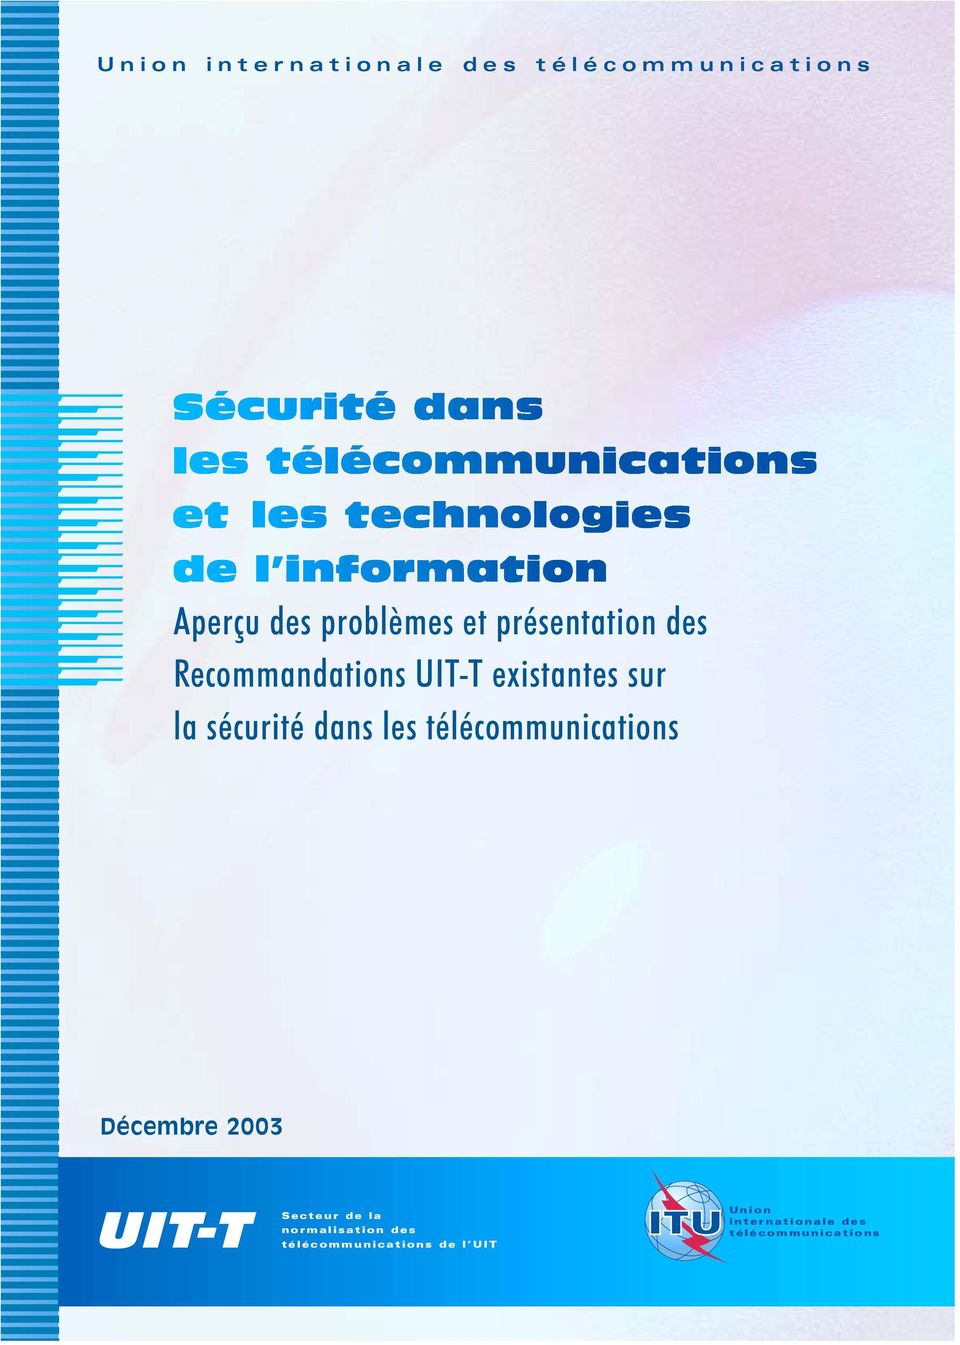 les télécommunications Décembre 2003 UIT-T Secteur de la normalisation